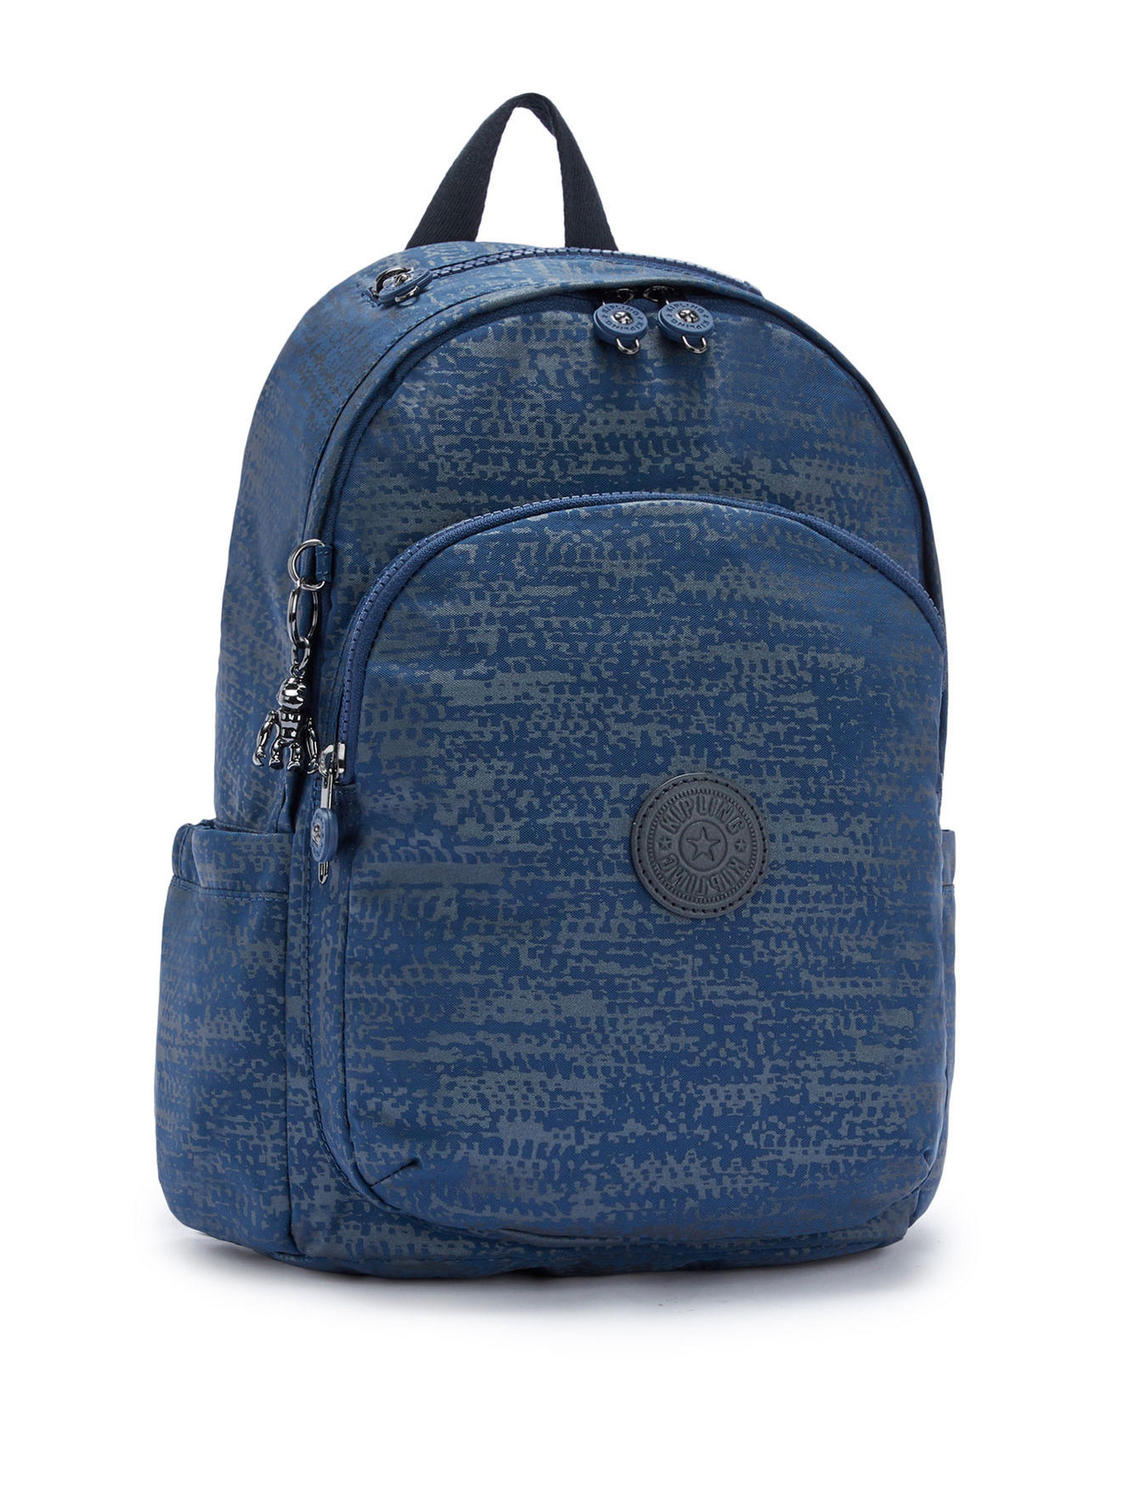 Kipling Delia Nylon Shoulder Backpack Blue Eclipse Print - Buy At ...